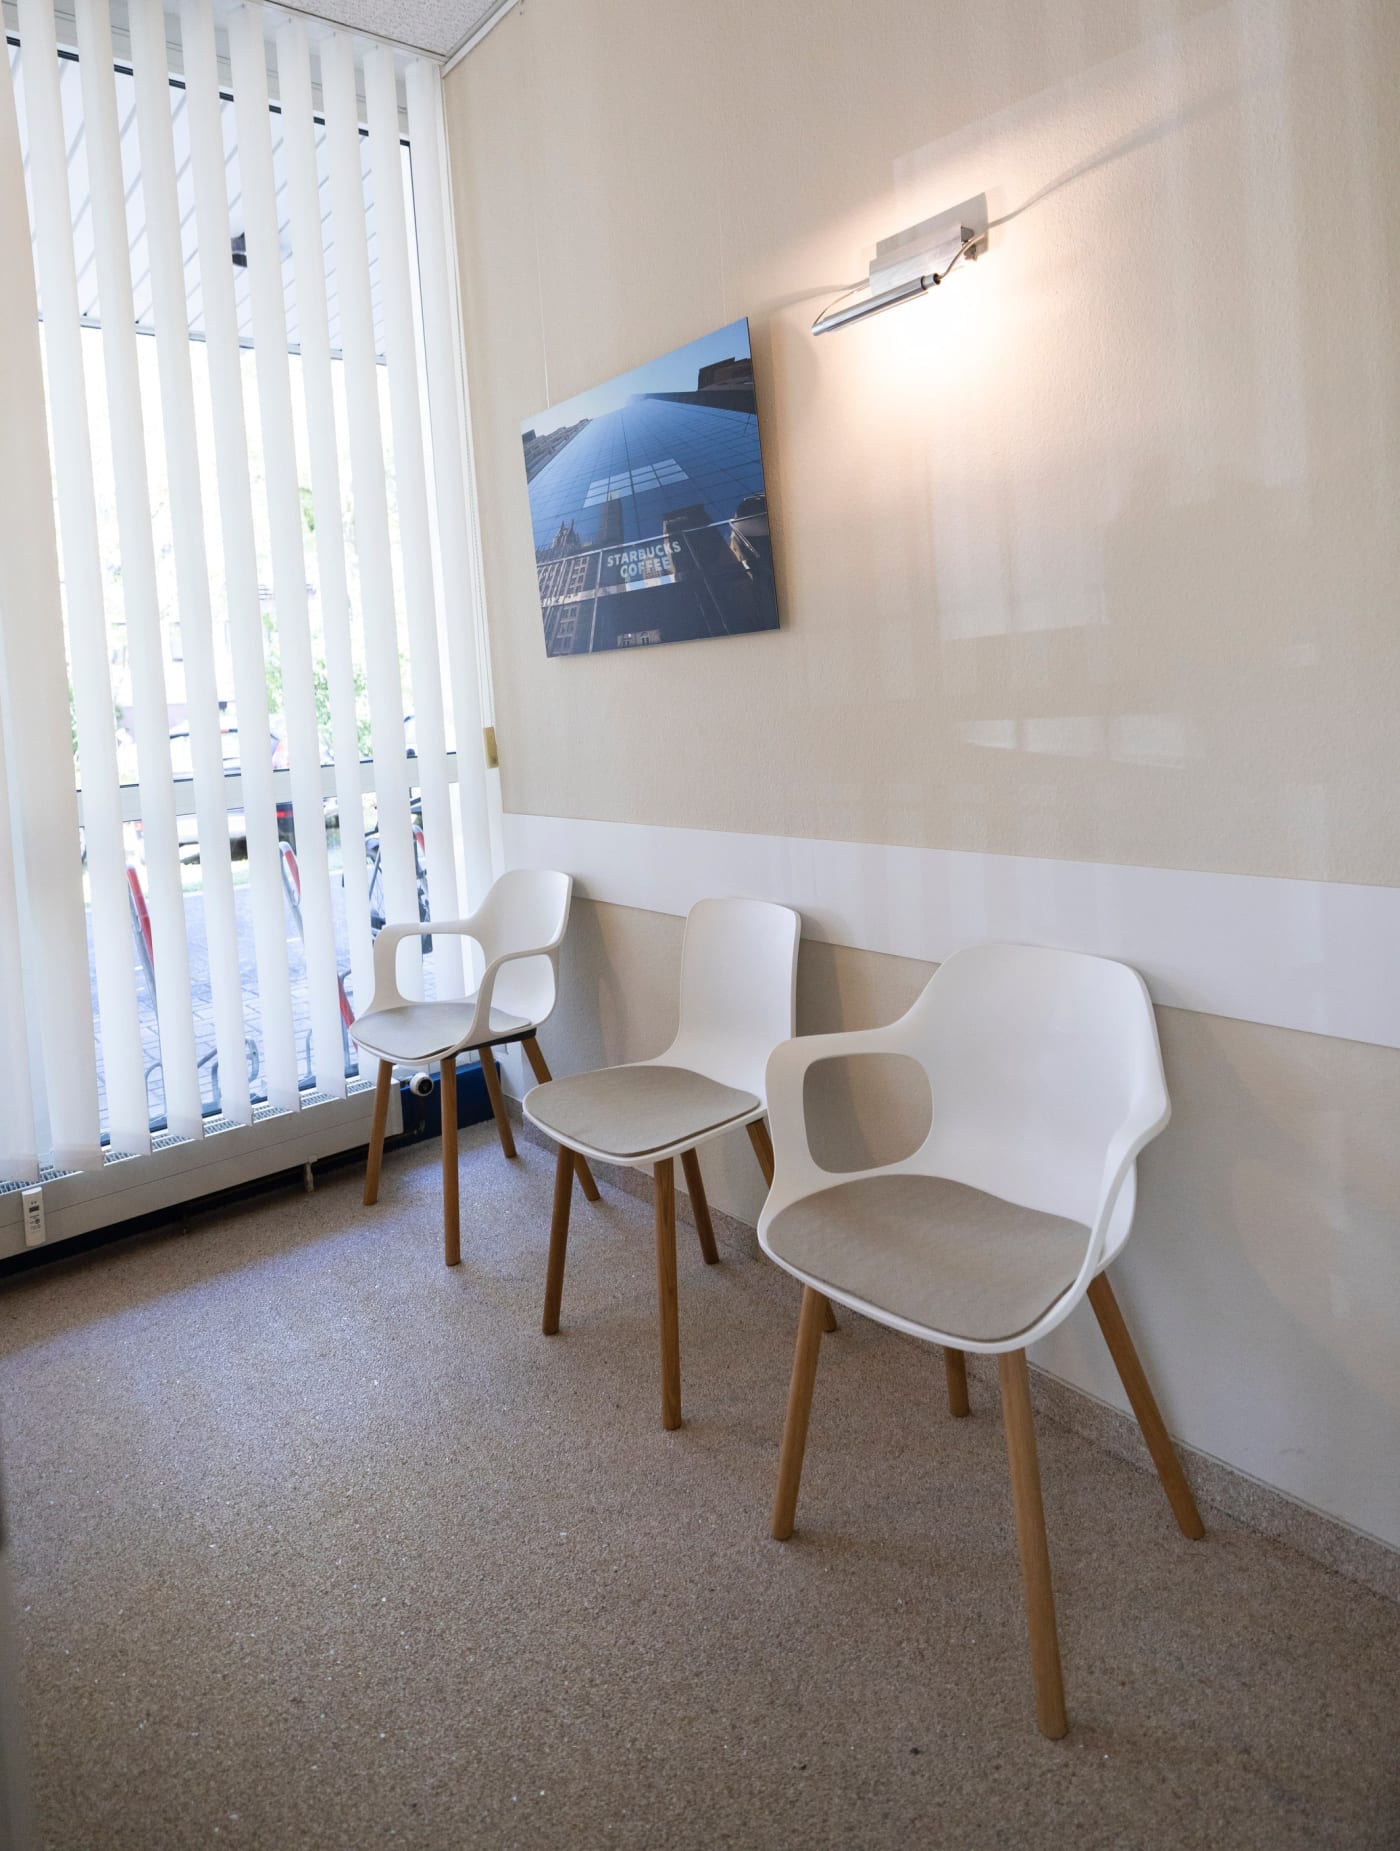 Wartezimmer mit drei weißen Stühle und einem Wandbild